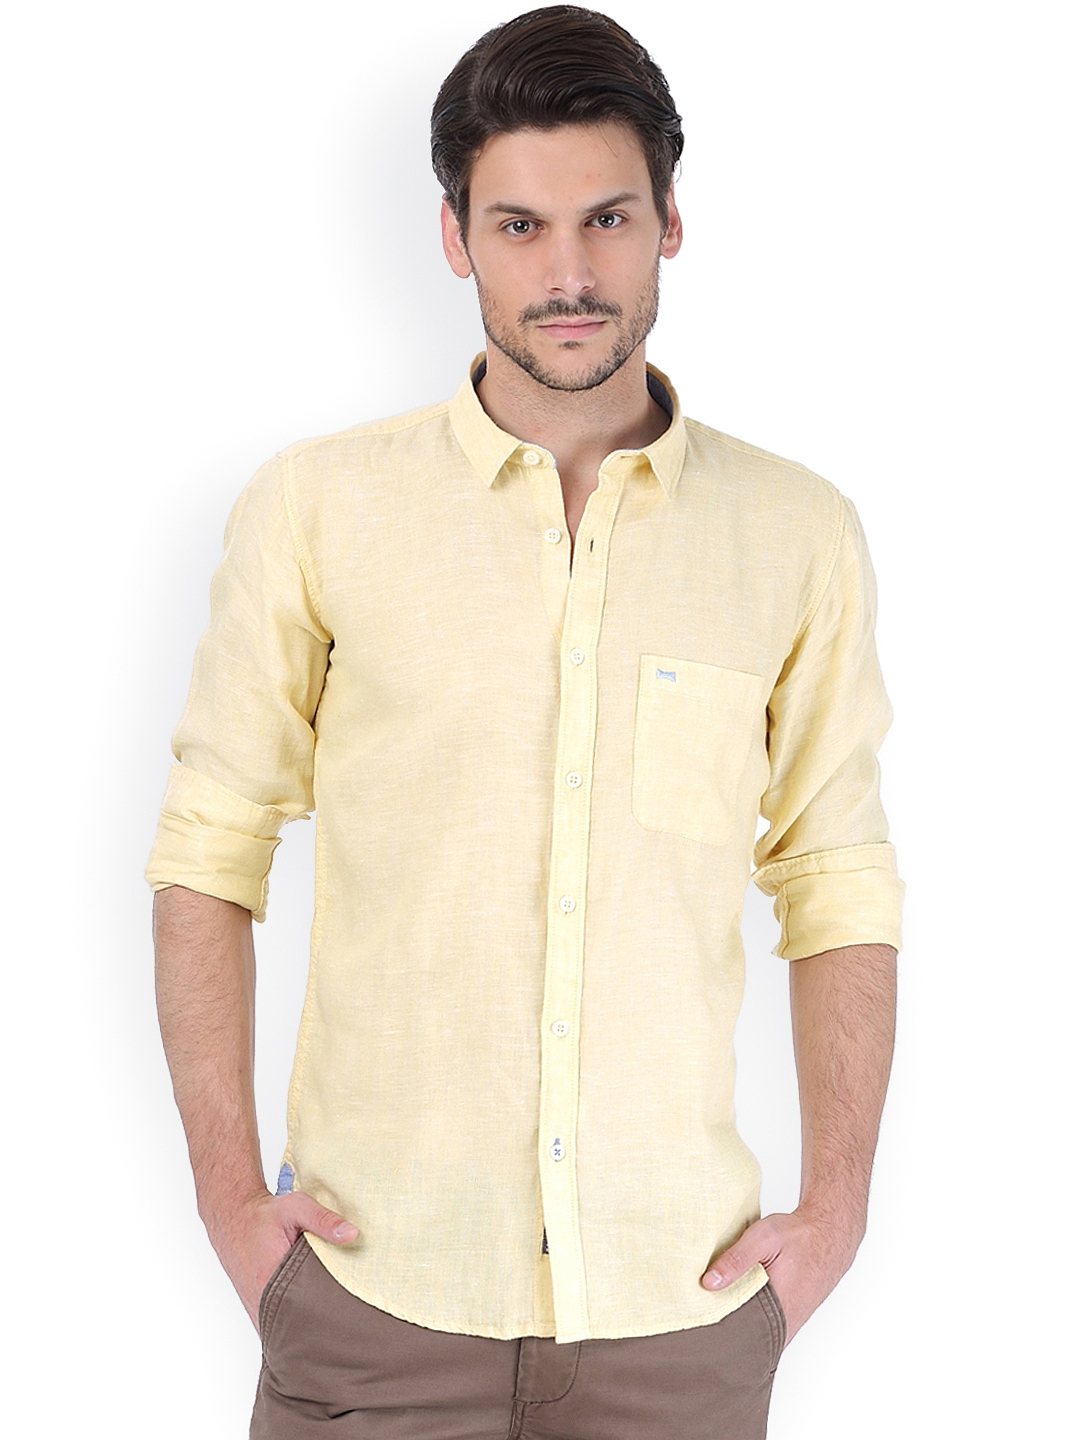 men's yellow dress shirt outfit idea | Shirt outfit men, Mens fall, Mens  fashion fall